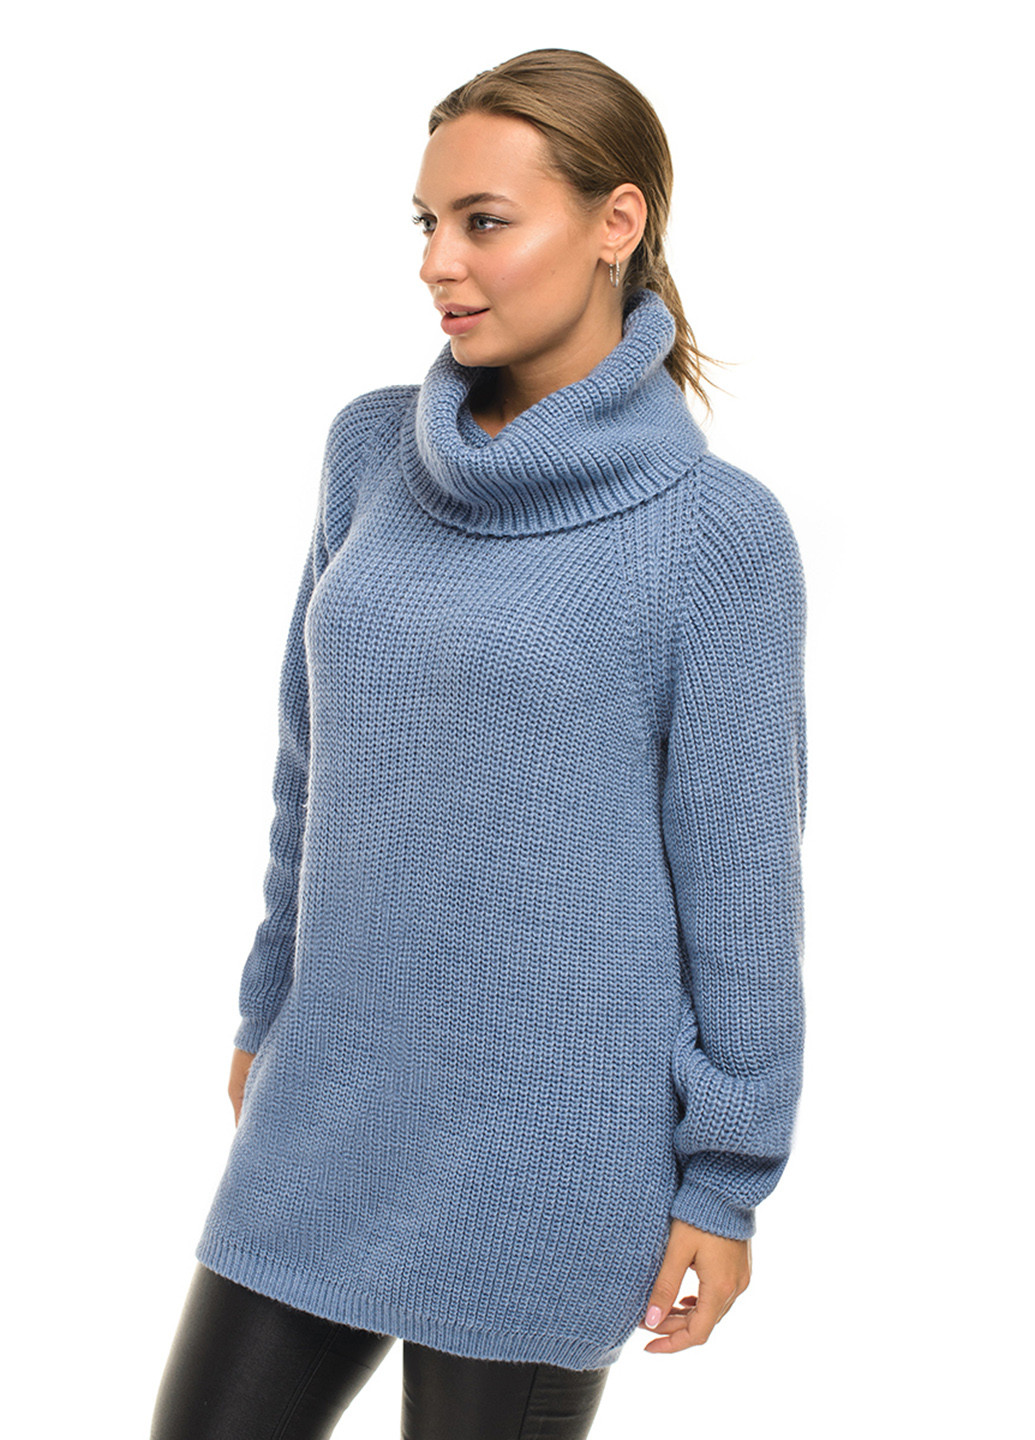 Голубой теплый свитер крупной вязки светлая пудра SVTR